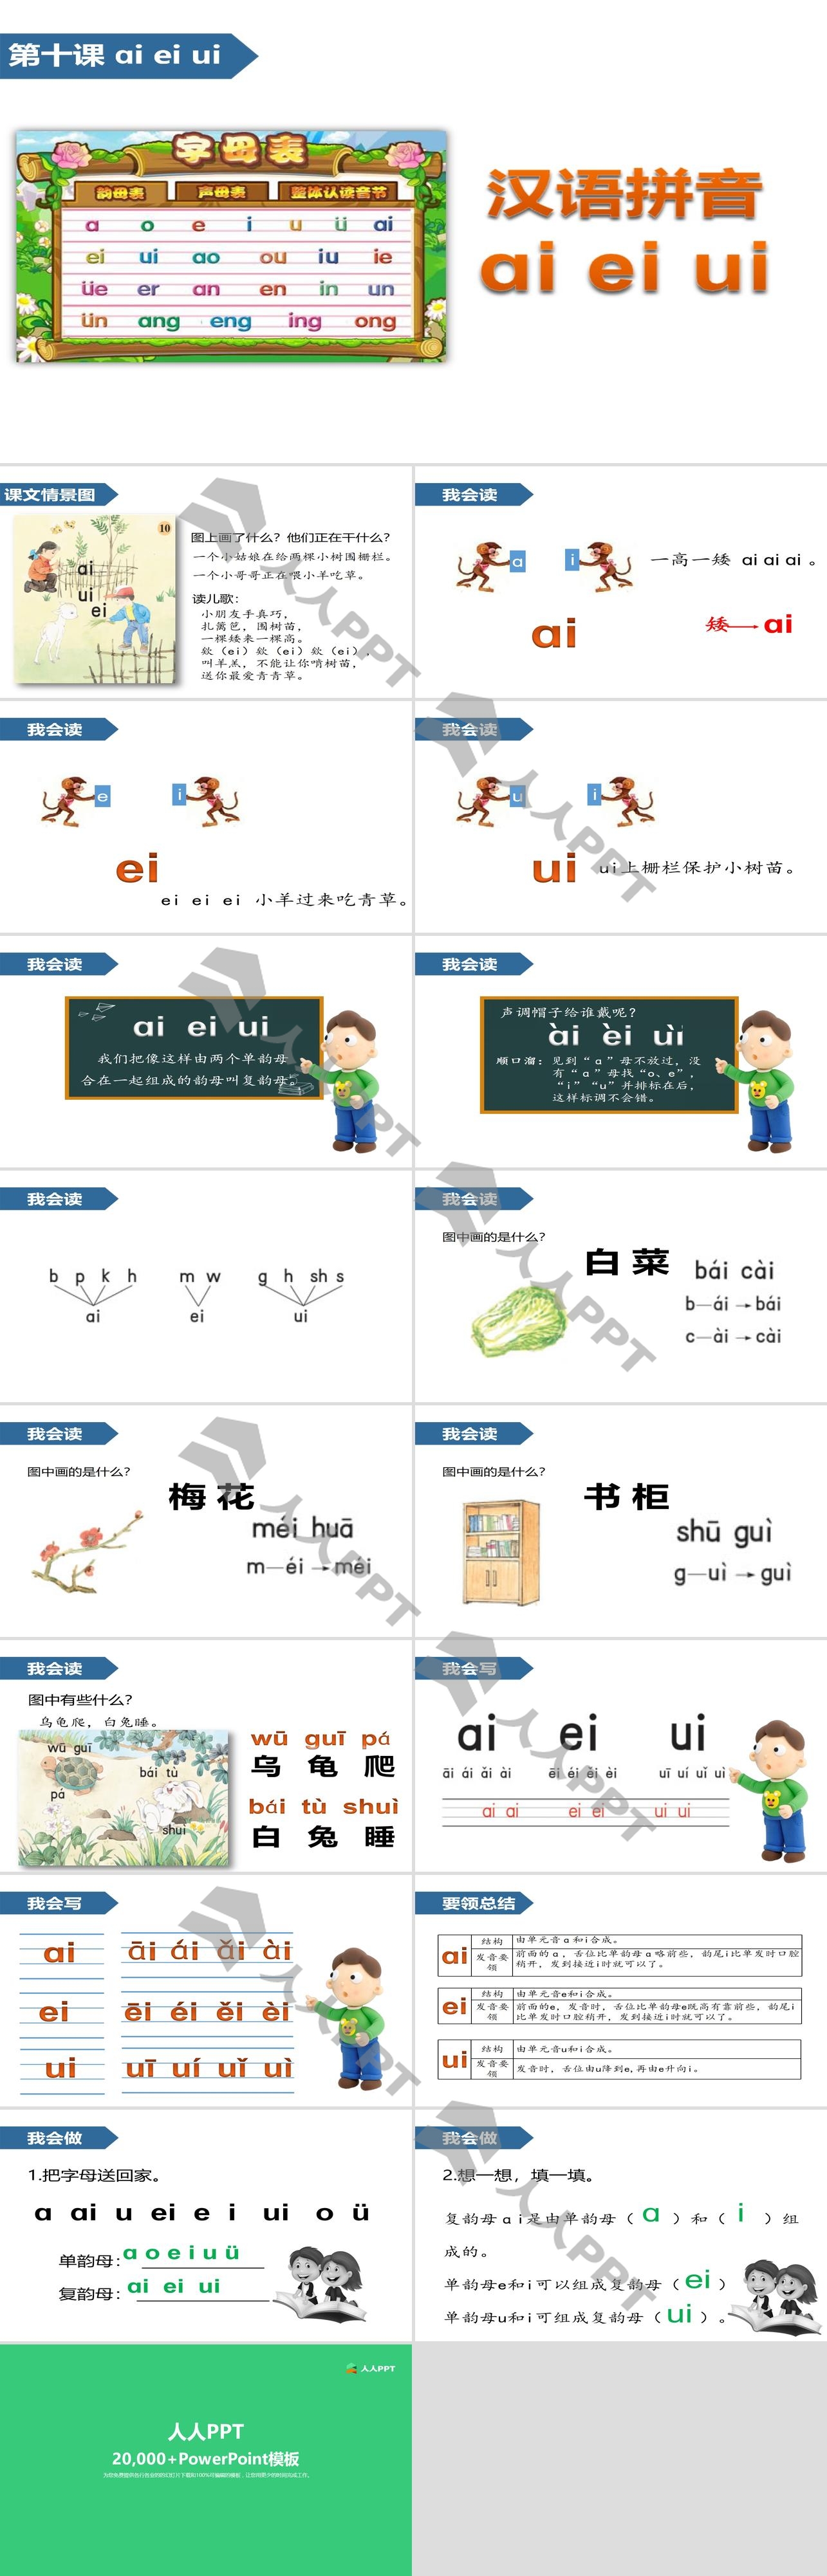 《aieiui》汉语拼音PPT长图